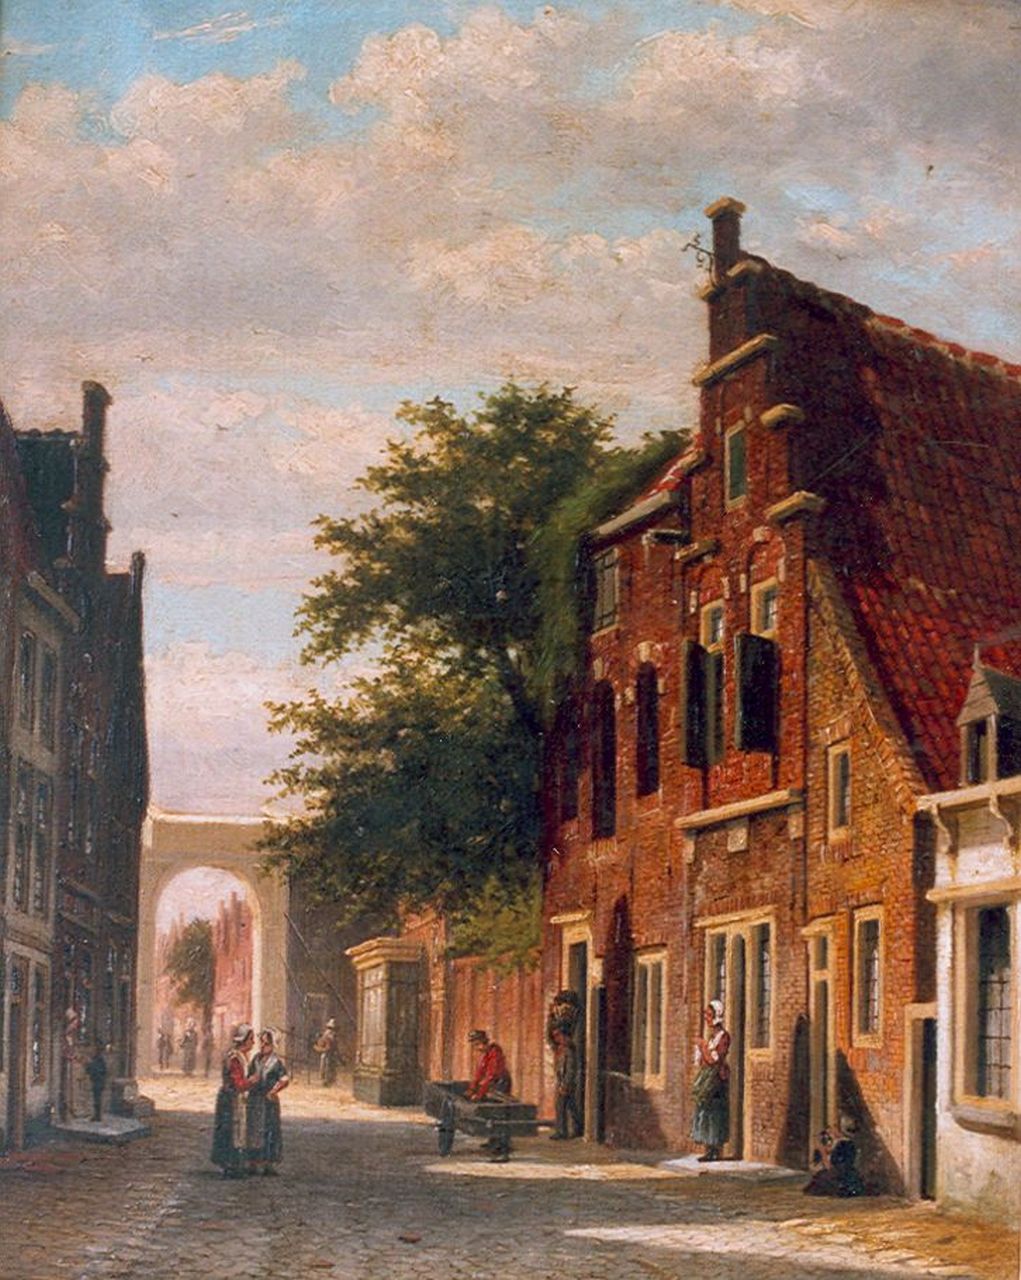 Mittertreiner J.J.  | Johannes Jacobus Mittertreiner, Oudhollands straatje met figuren, olieverf op doek 42,4 x 33,6 cm, gesigneerd rechtsonder